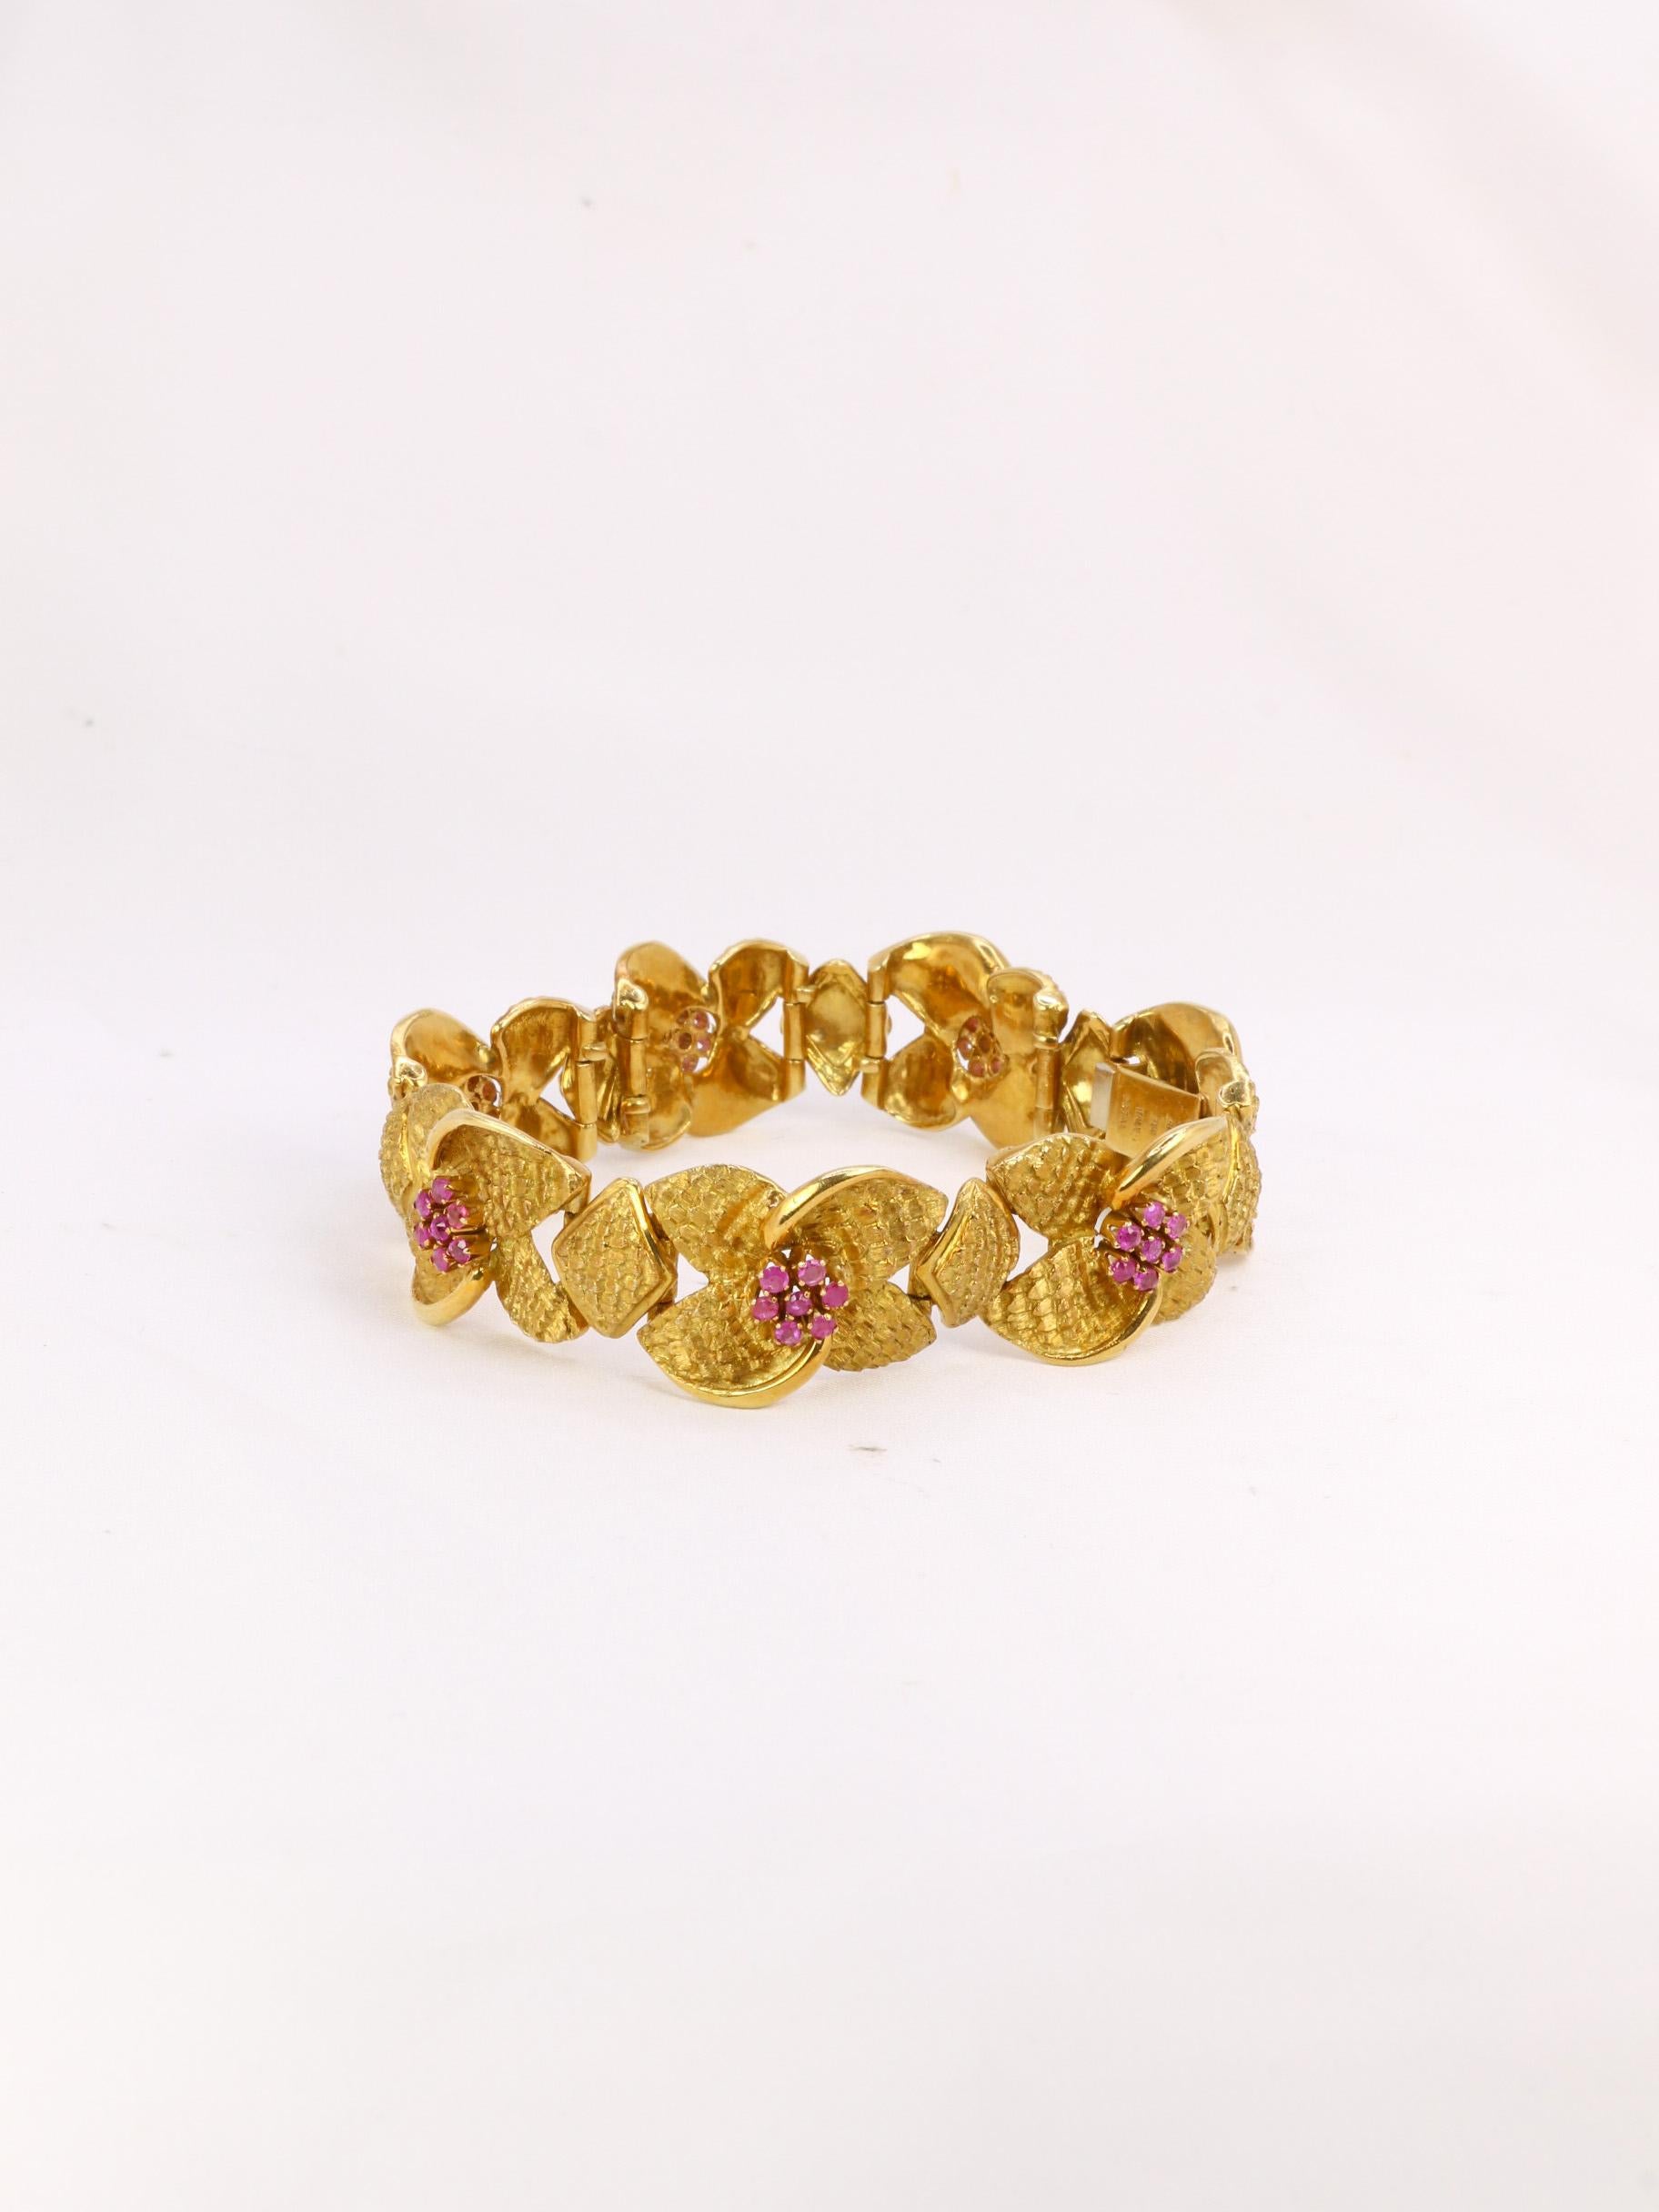 Armband aus 18-karätigem Gold (750°/°°), bestehend aus braunen Gliederarmbändern, die mit Blumen verziert sind. Die Blütenstempel sind mit kleinen Rubinen versehen. Ein italienisches Werk von hervorragender Qualität aus den 1960er Jahren. Signé du